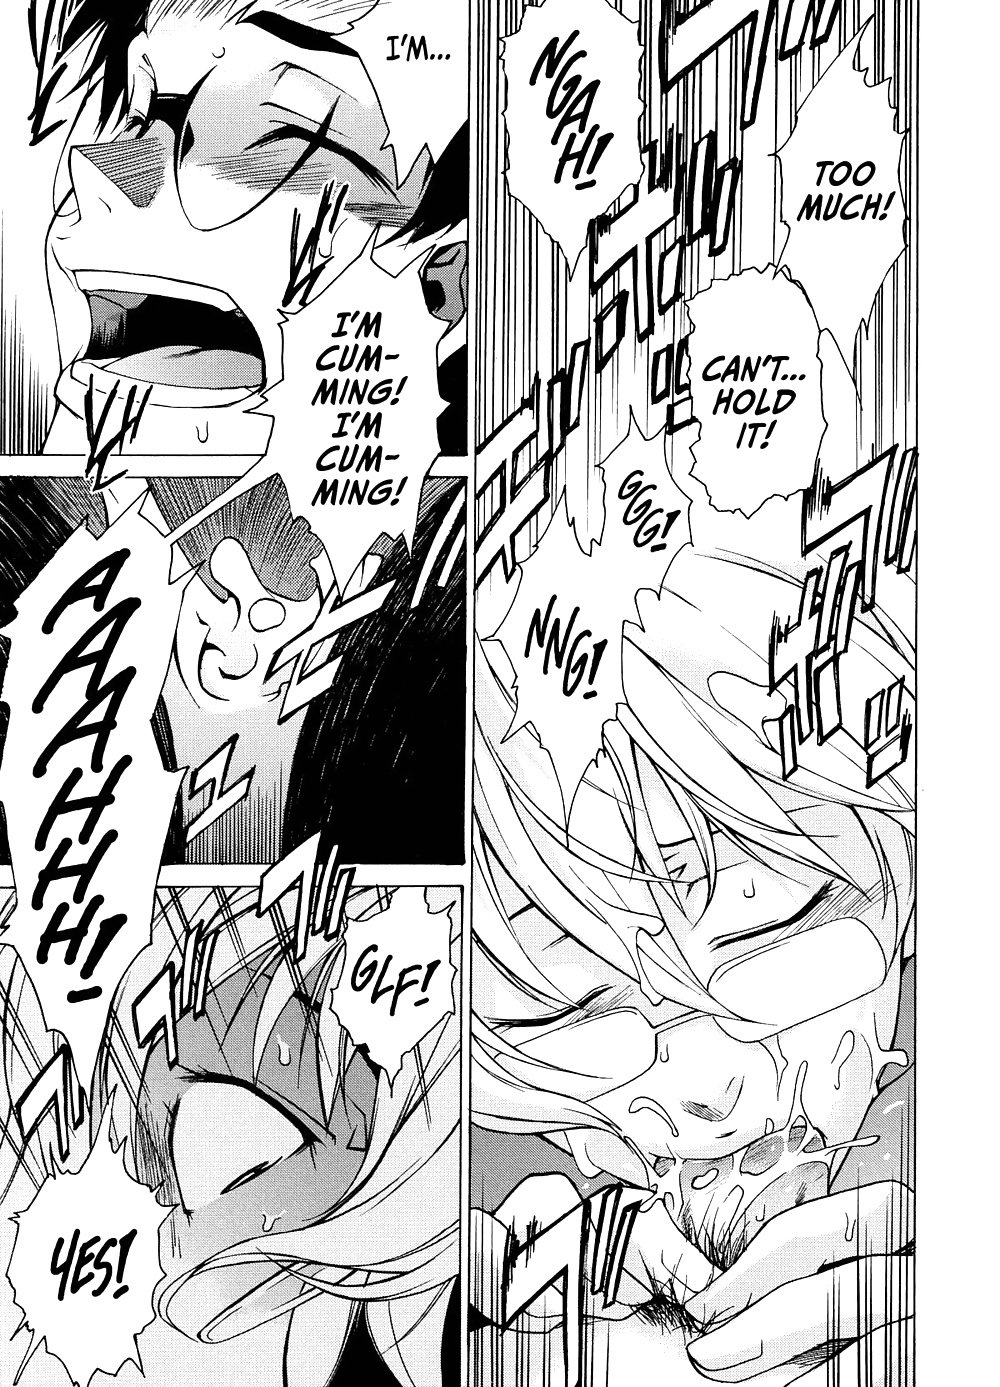 Domin-8 Me ( Take On me ) Hentai Manga Part 2 (9/98)